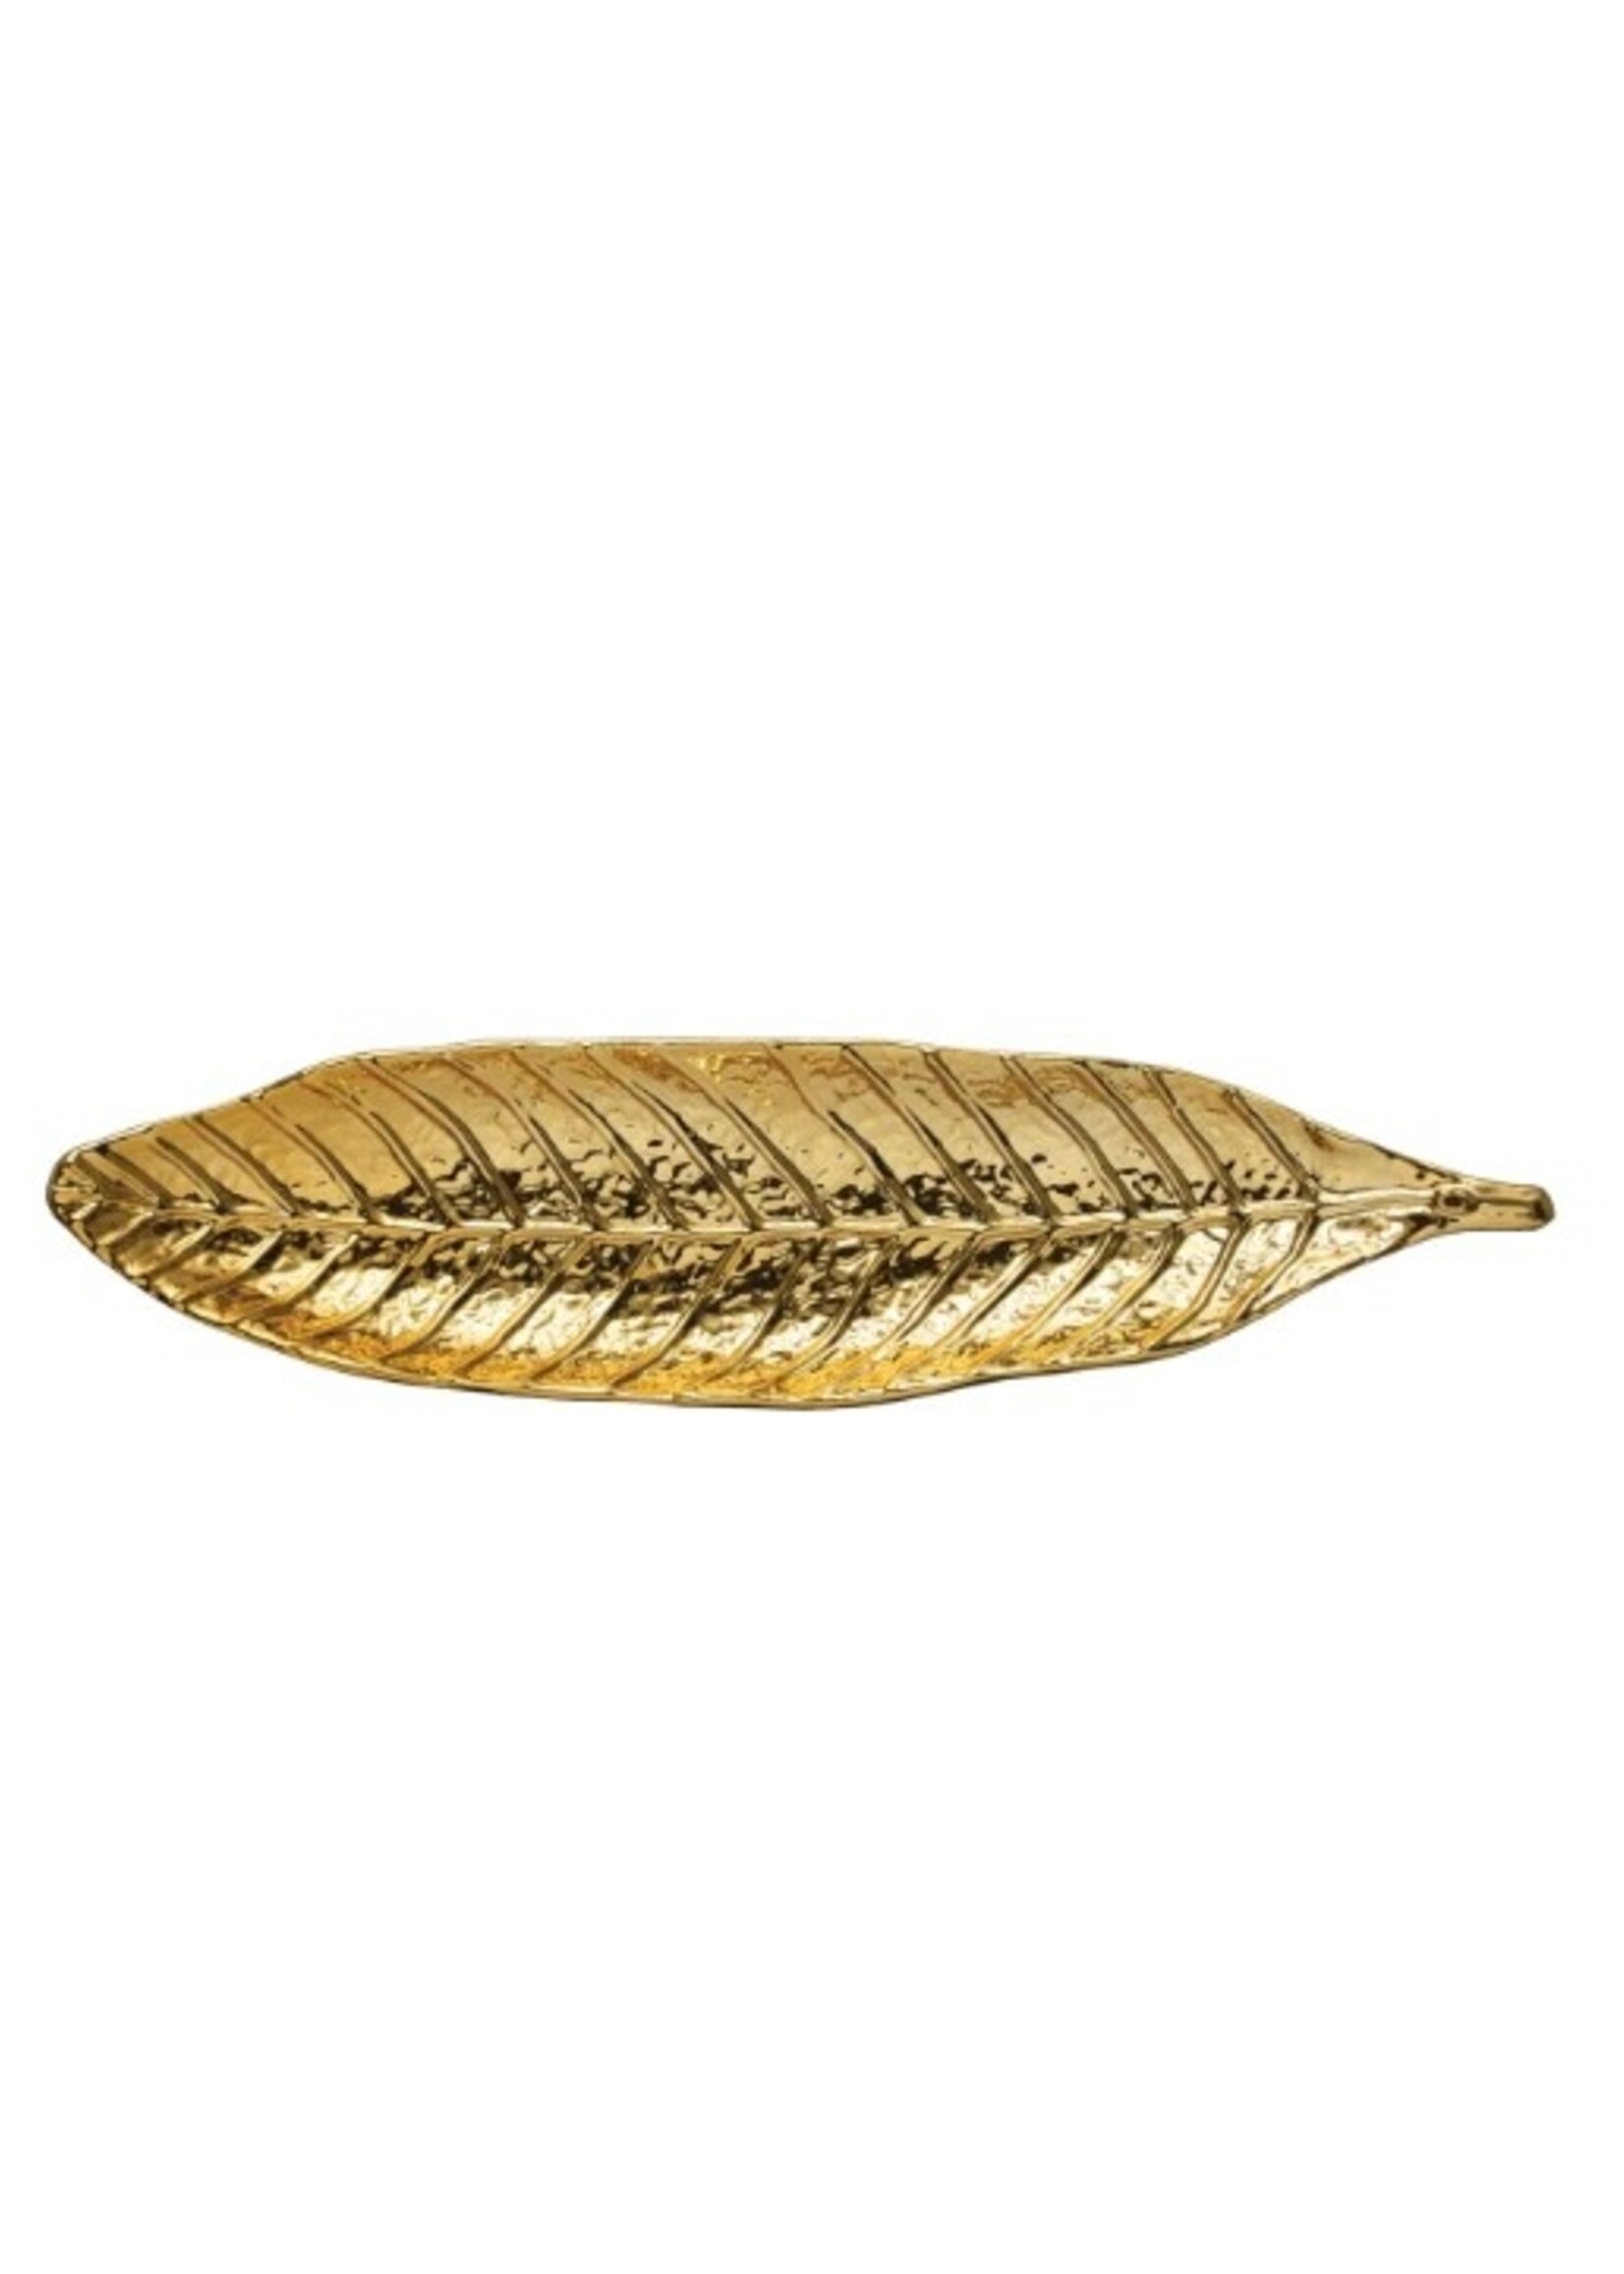 Gold Incense Dish/Holder